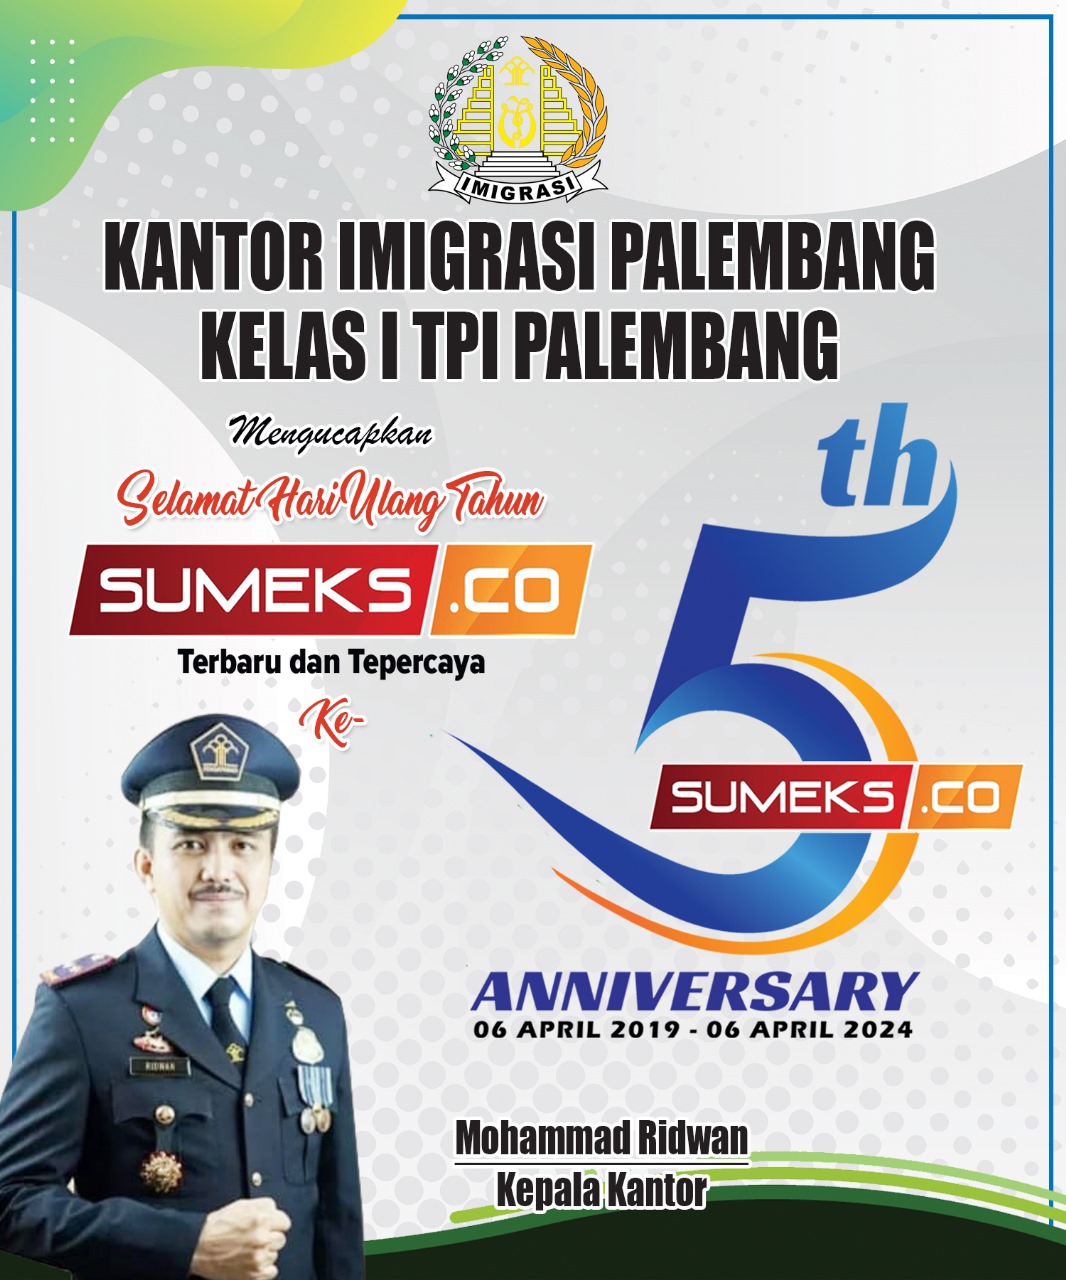 Kantor Imigrasi Palembang Mengucapkan Selamat Ulang Tahun SUMEKS.CO yang Ke-5